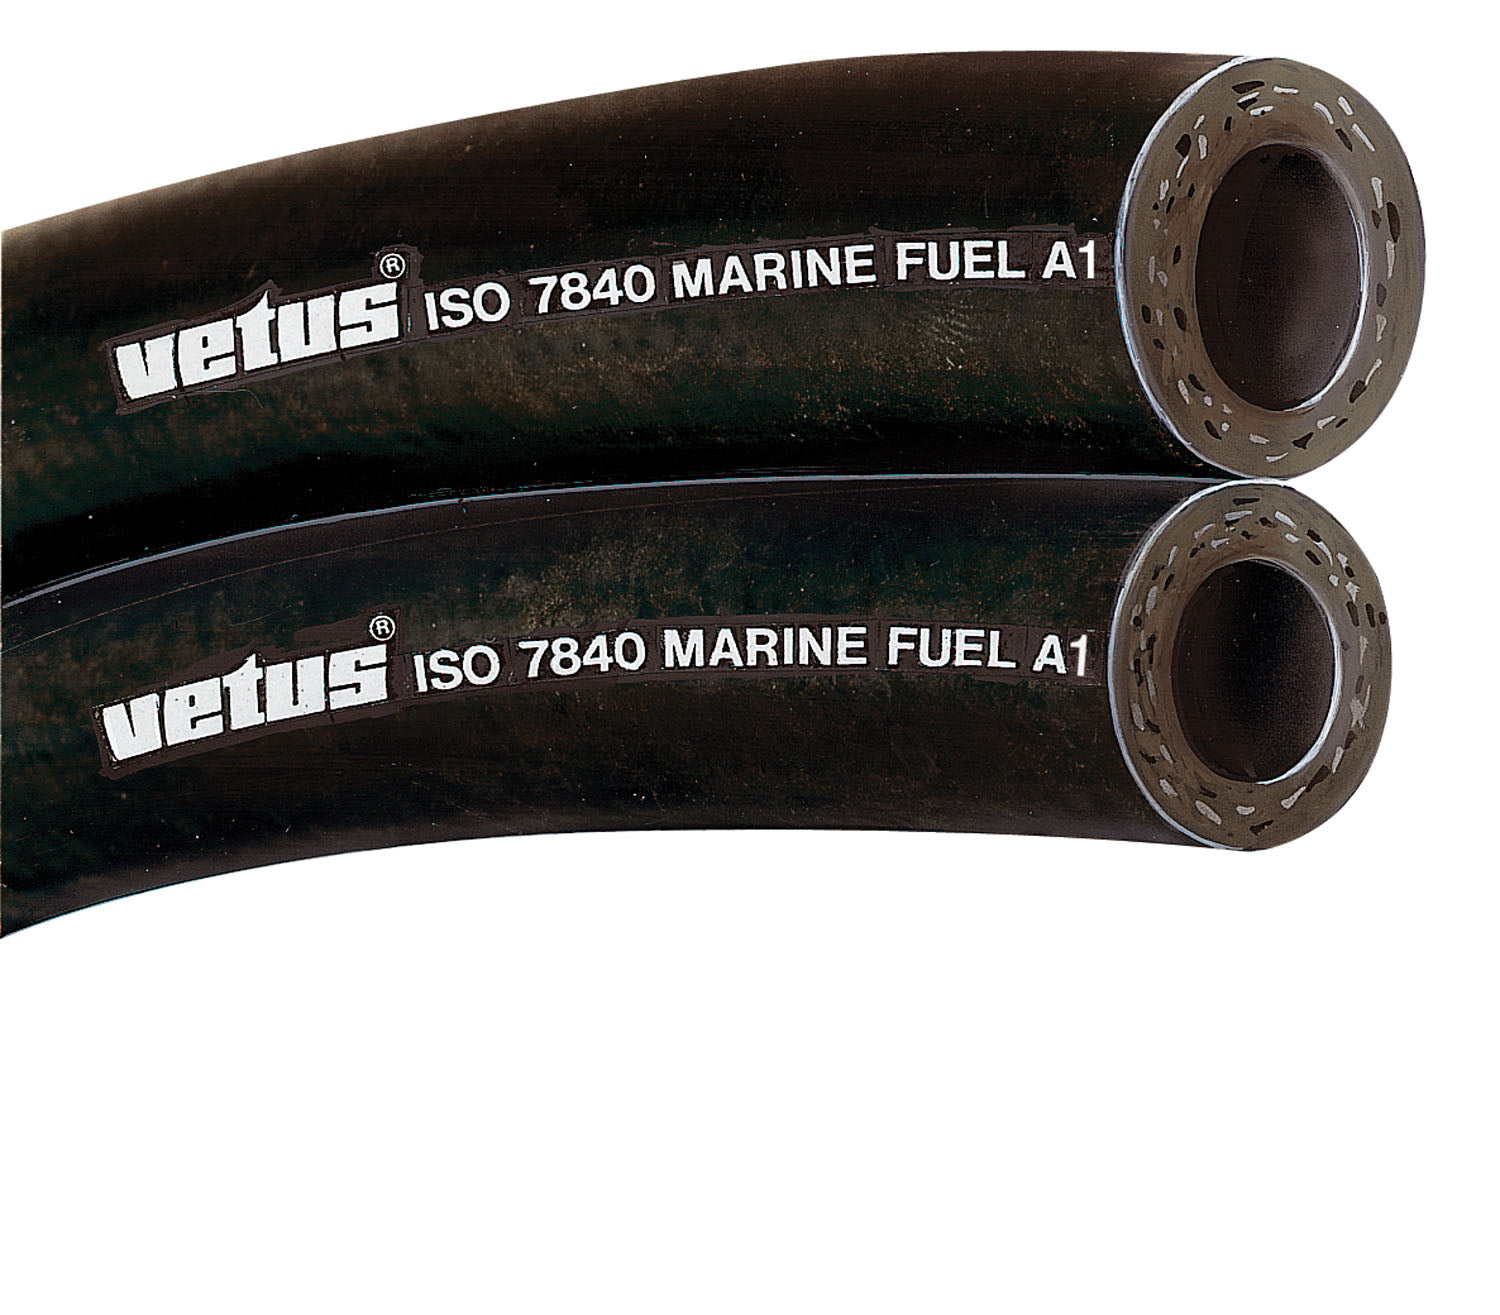 Vetus FUHOSE13A - Fuel hose 13x22mm iso7840-marine fuel A1